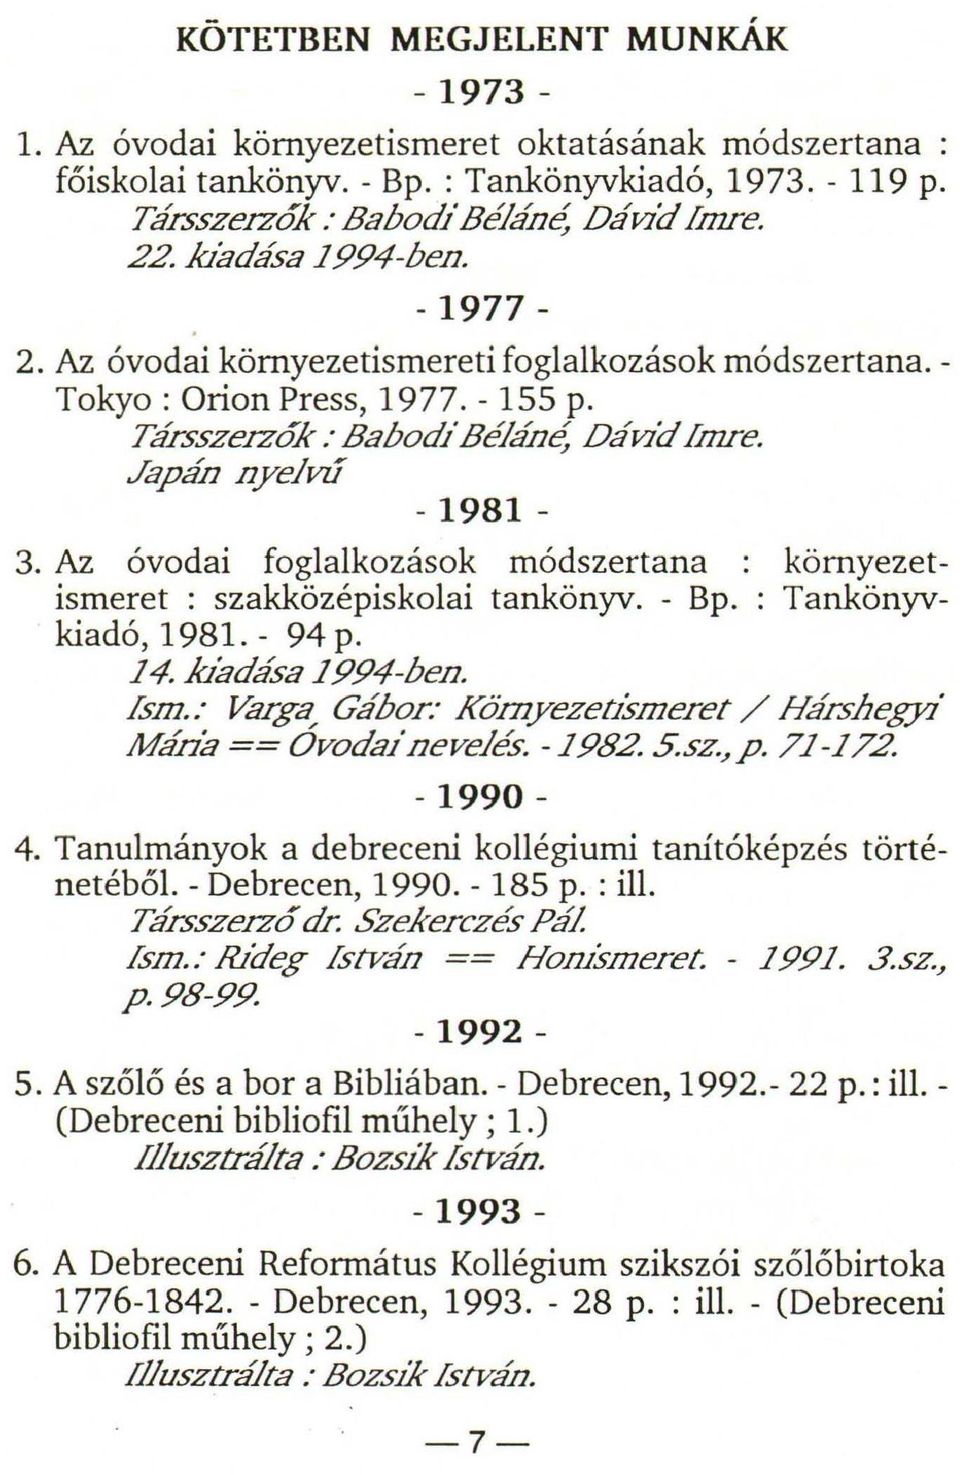 Az óvodai foglalkozások módszertana : környezetismeret : szakközépiskolai tankönyv. - Bp. : Tankönyvkiadó, 1981. - 94 p. 14..kiadása 1994-ben. fsm.